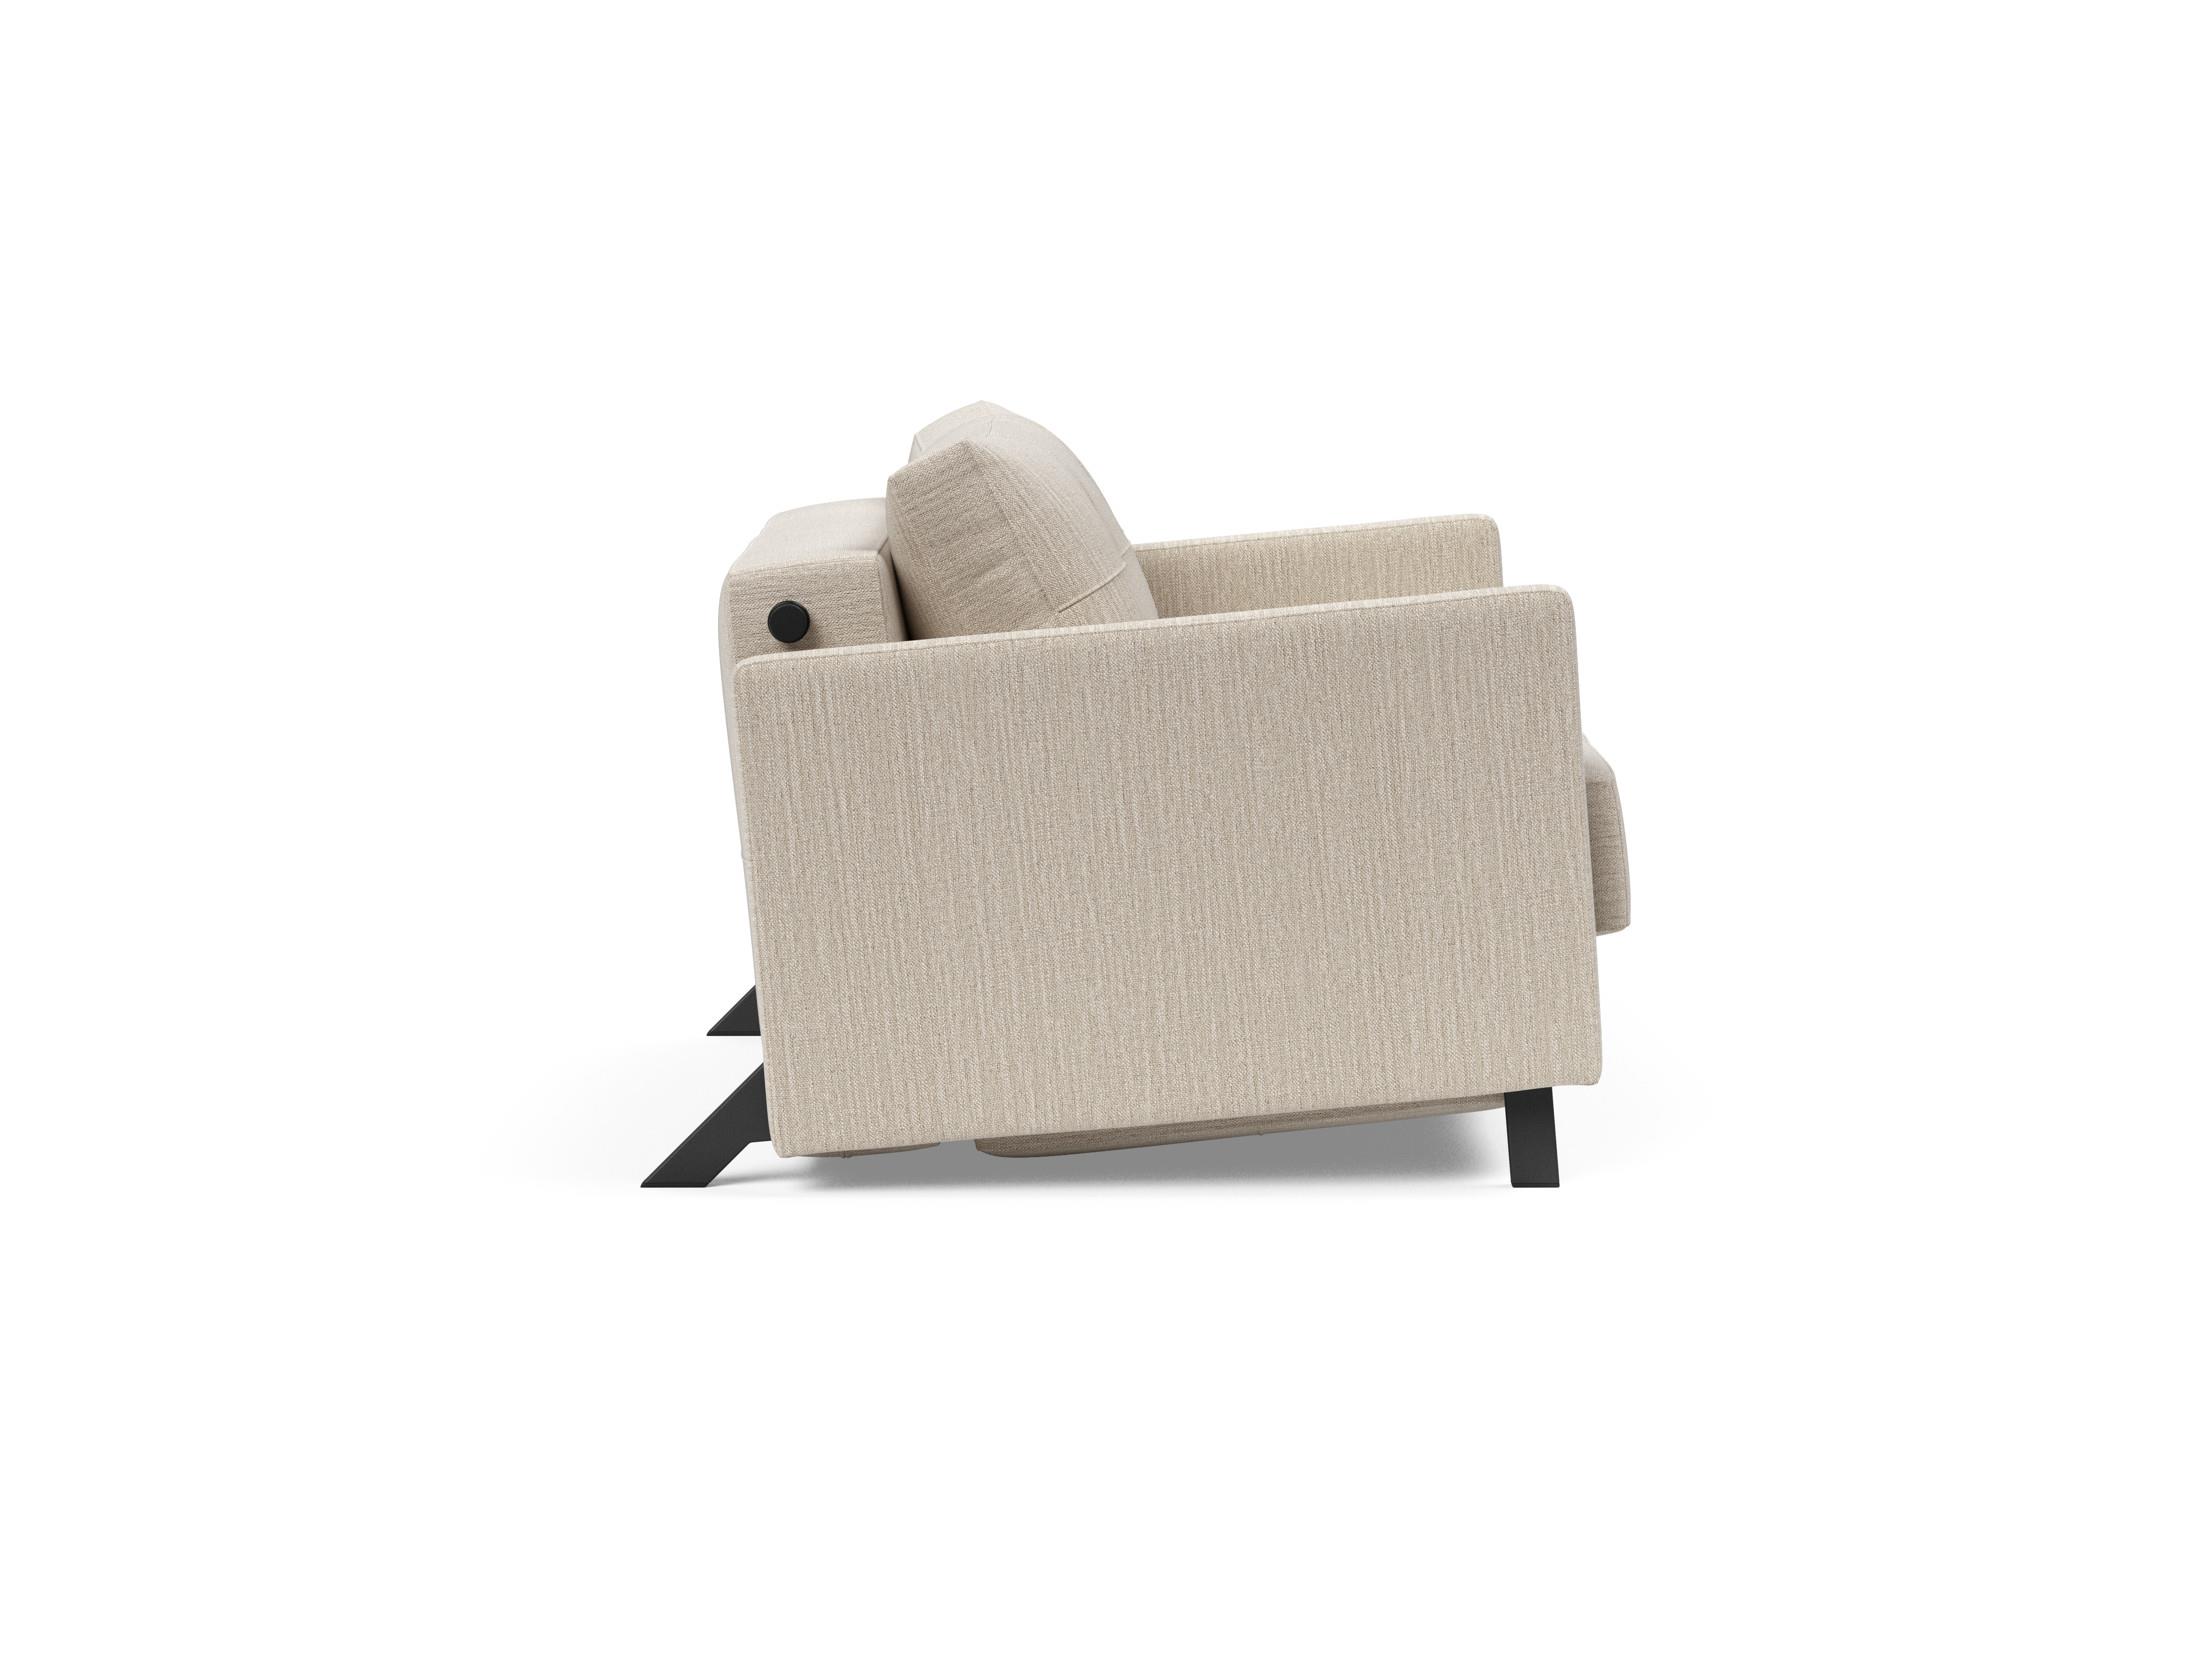 Кресло-кровать Cubed 90 Innovation. Кресло Innovation Cubed. Innovation Cubed кресло кровать. Кресло Cubed Deluxe.